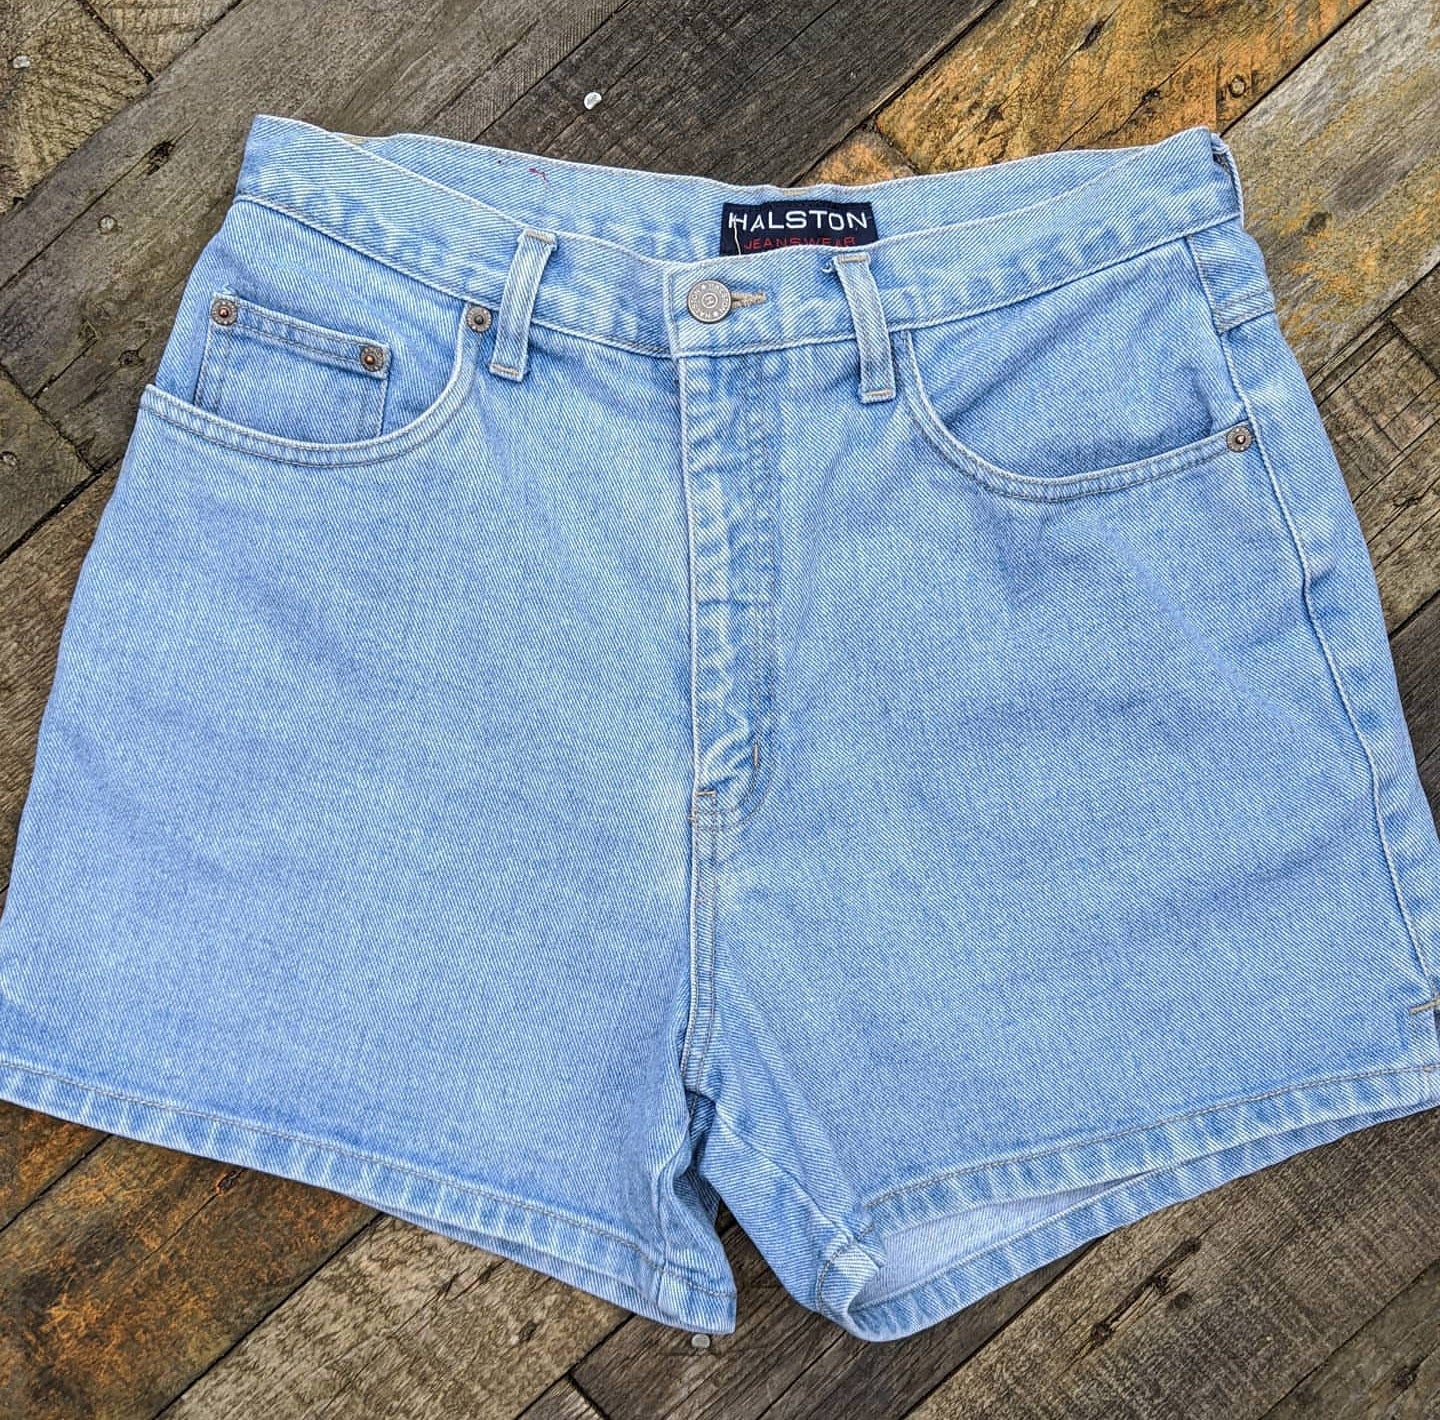 Vintage 80s high waist denim shorts Halston Jeanswear, waist 30/31"